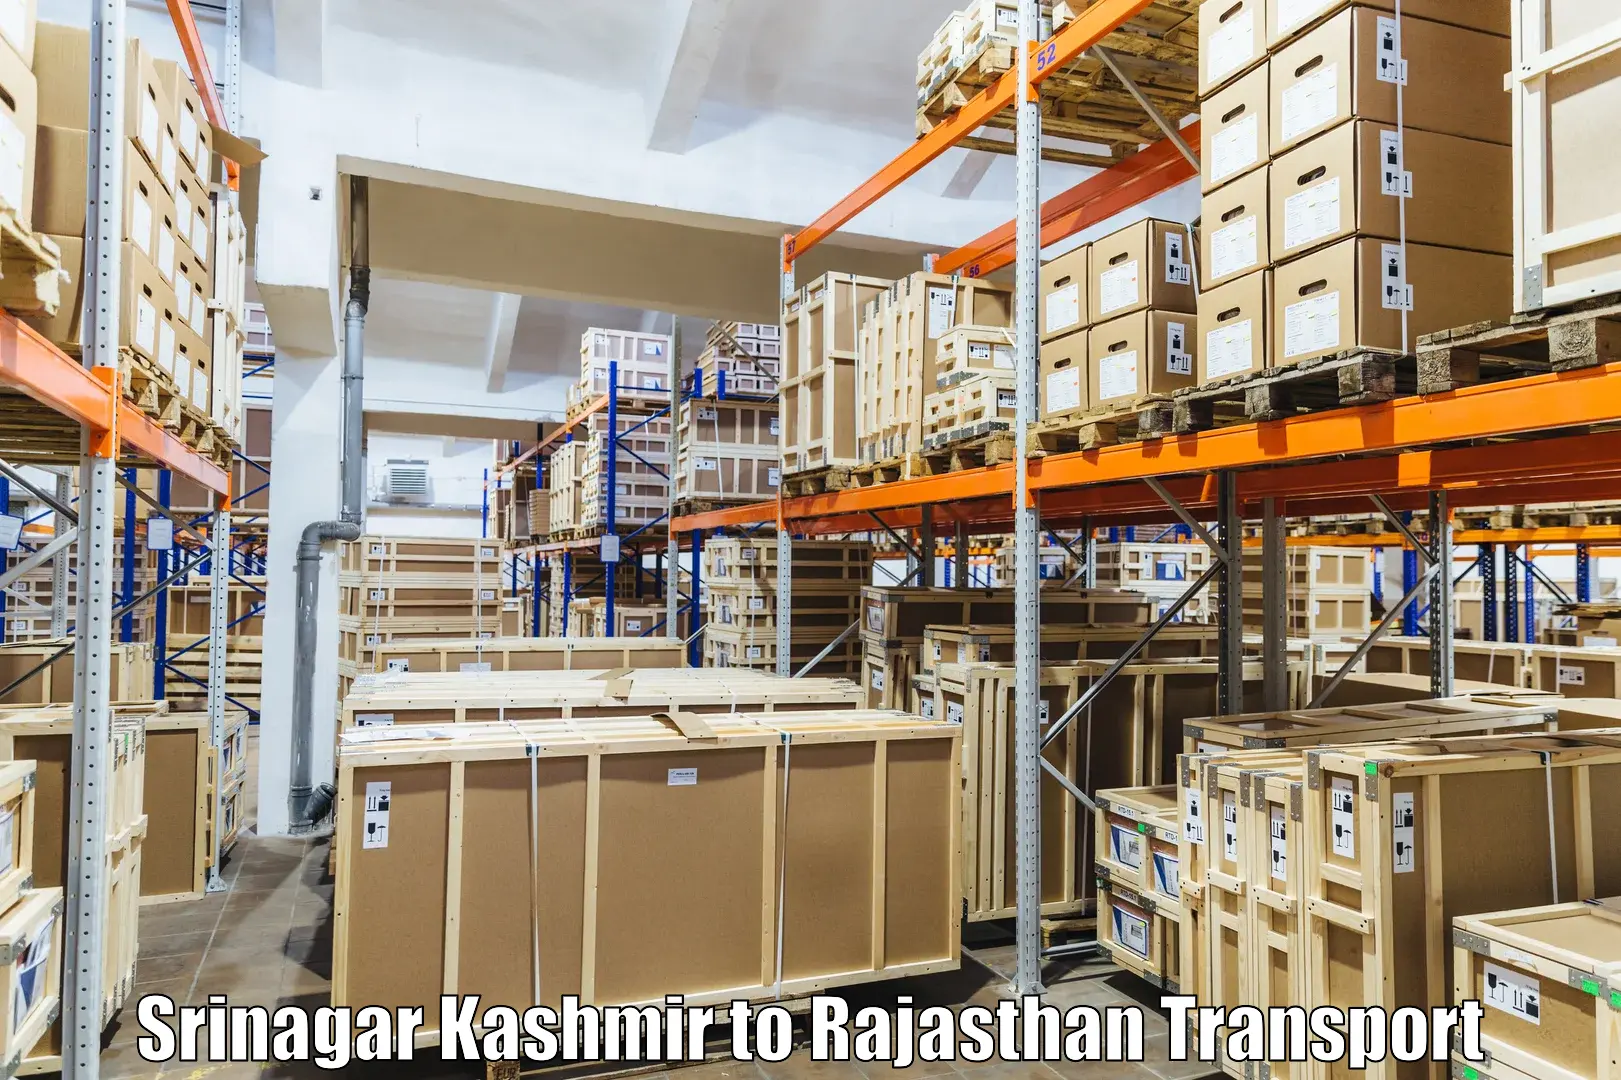 Transport in sharing Srinagar Kashmir to Sultana